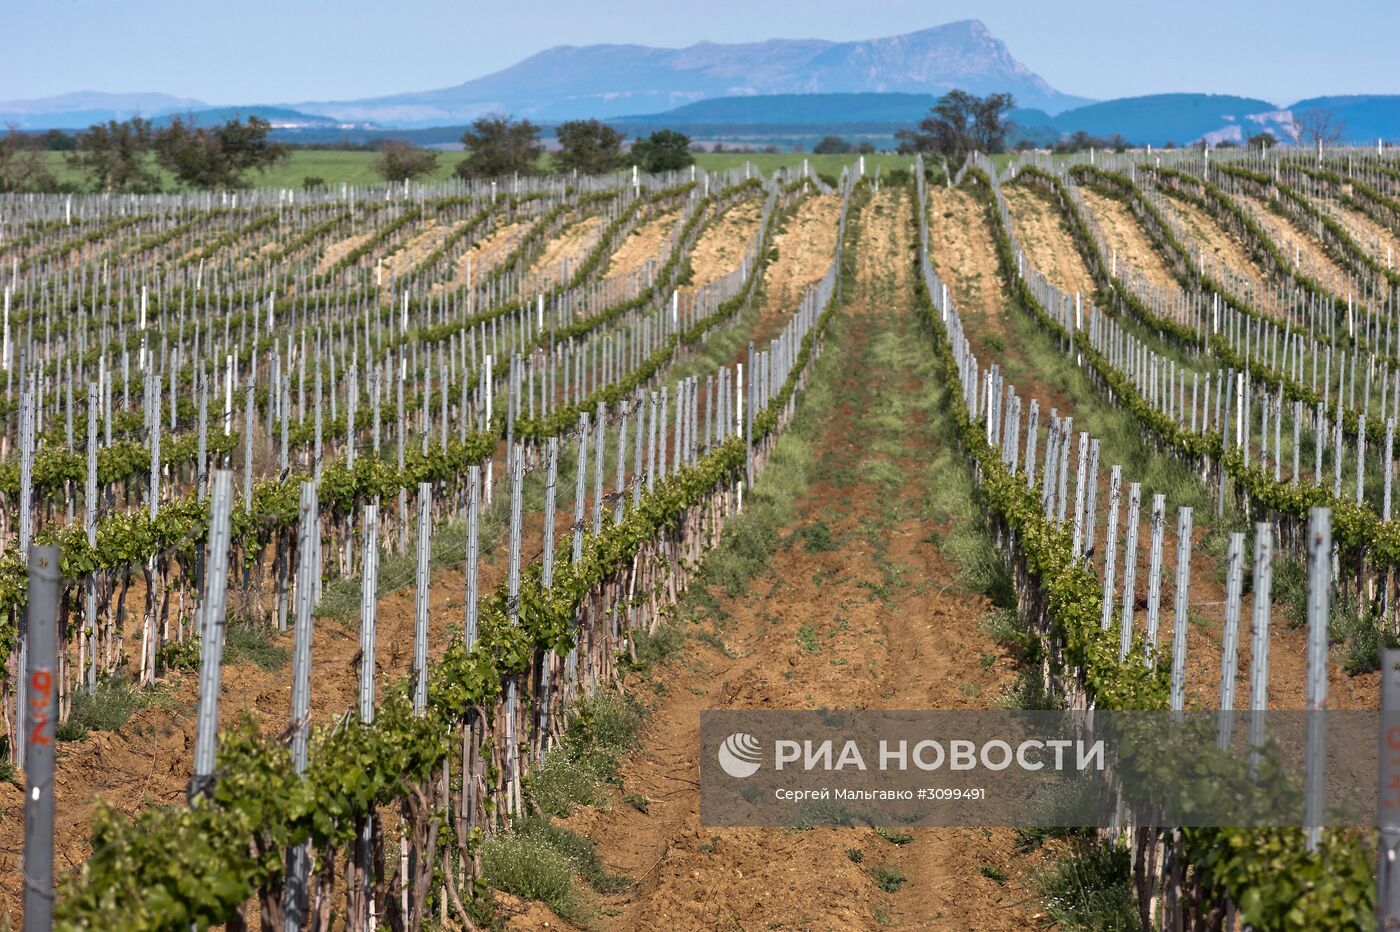 Инкерманский завод марочных вин в Крыму